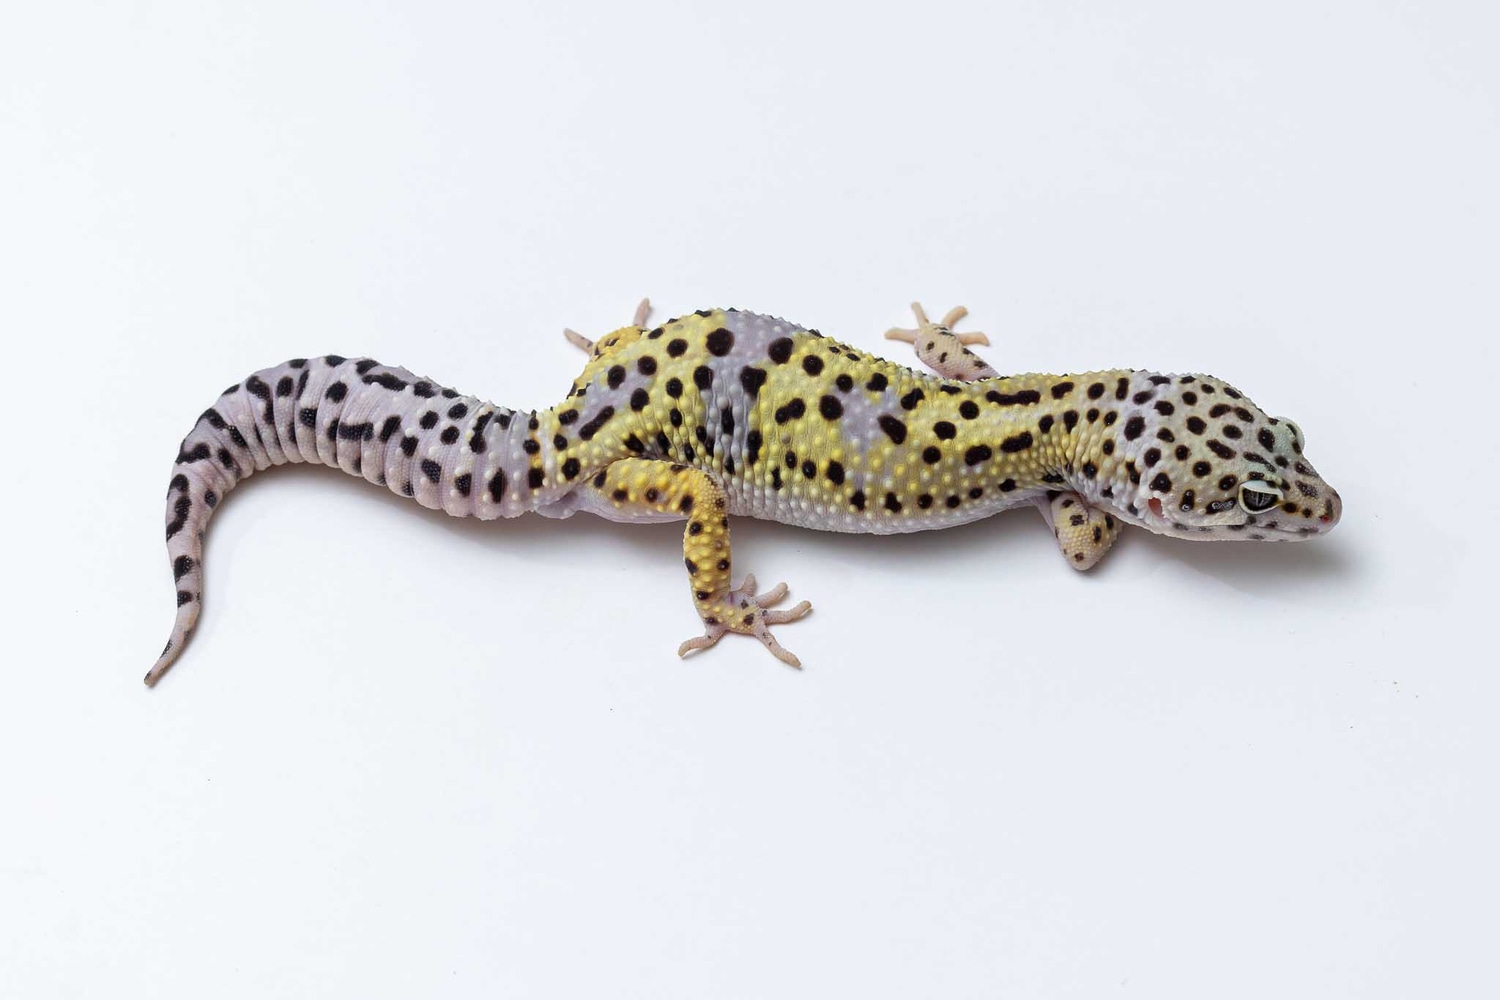 Mack Snow Firebold Cross Leopard Gecko by Suburban Geckos